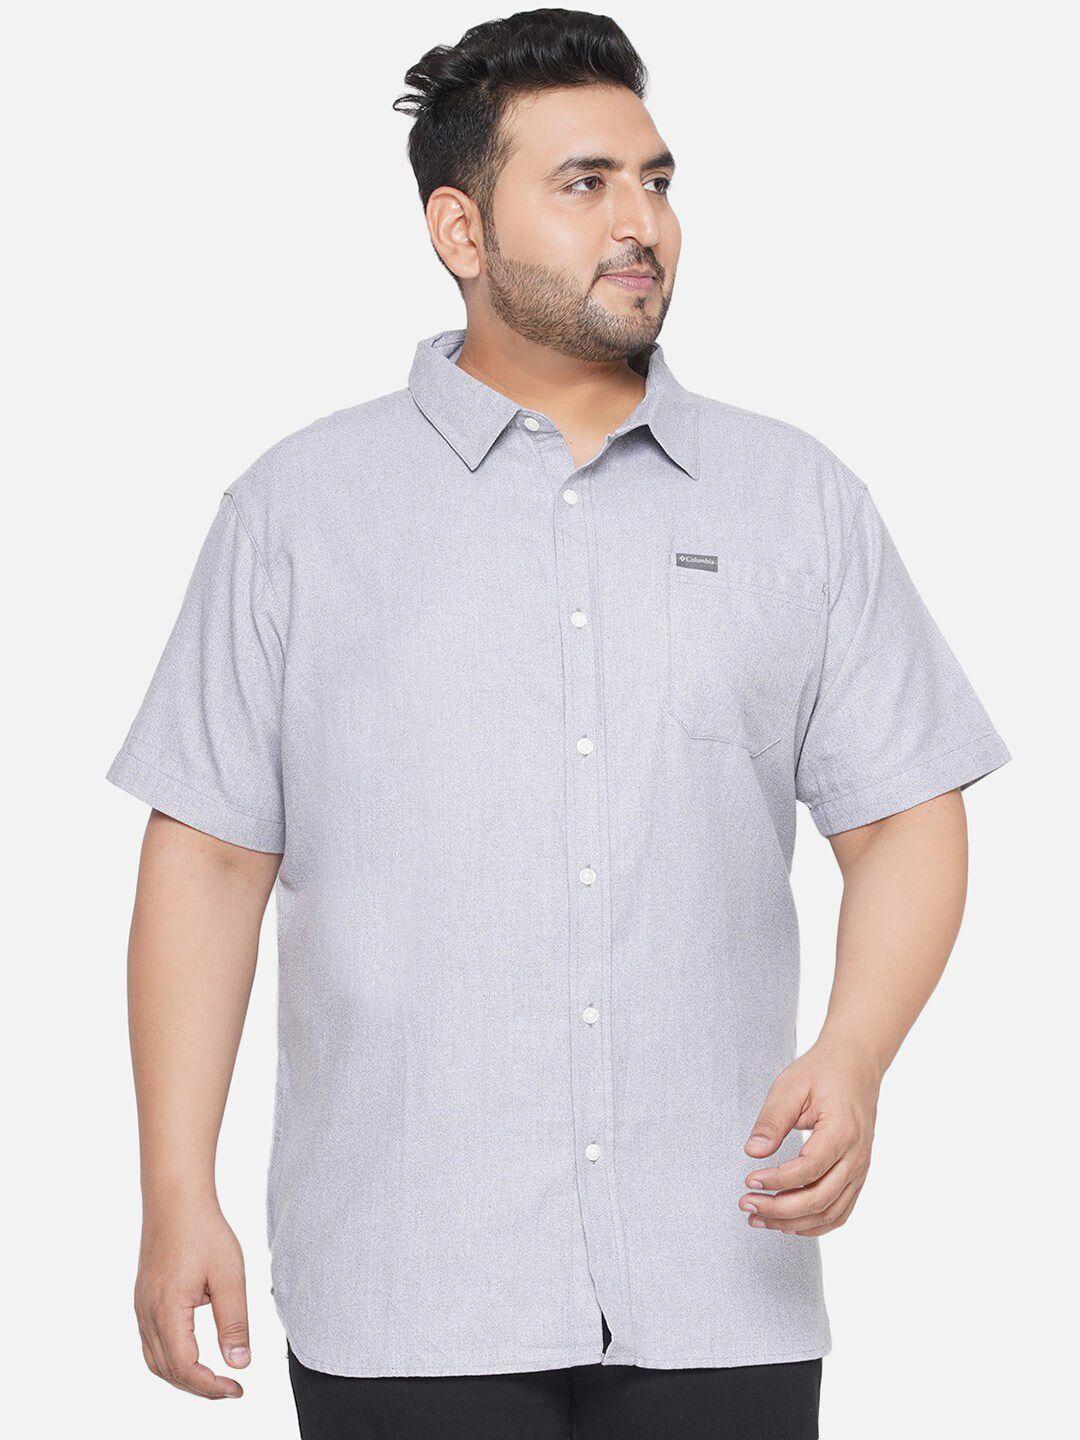 santonio plus size classic pure cotton shirt